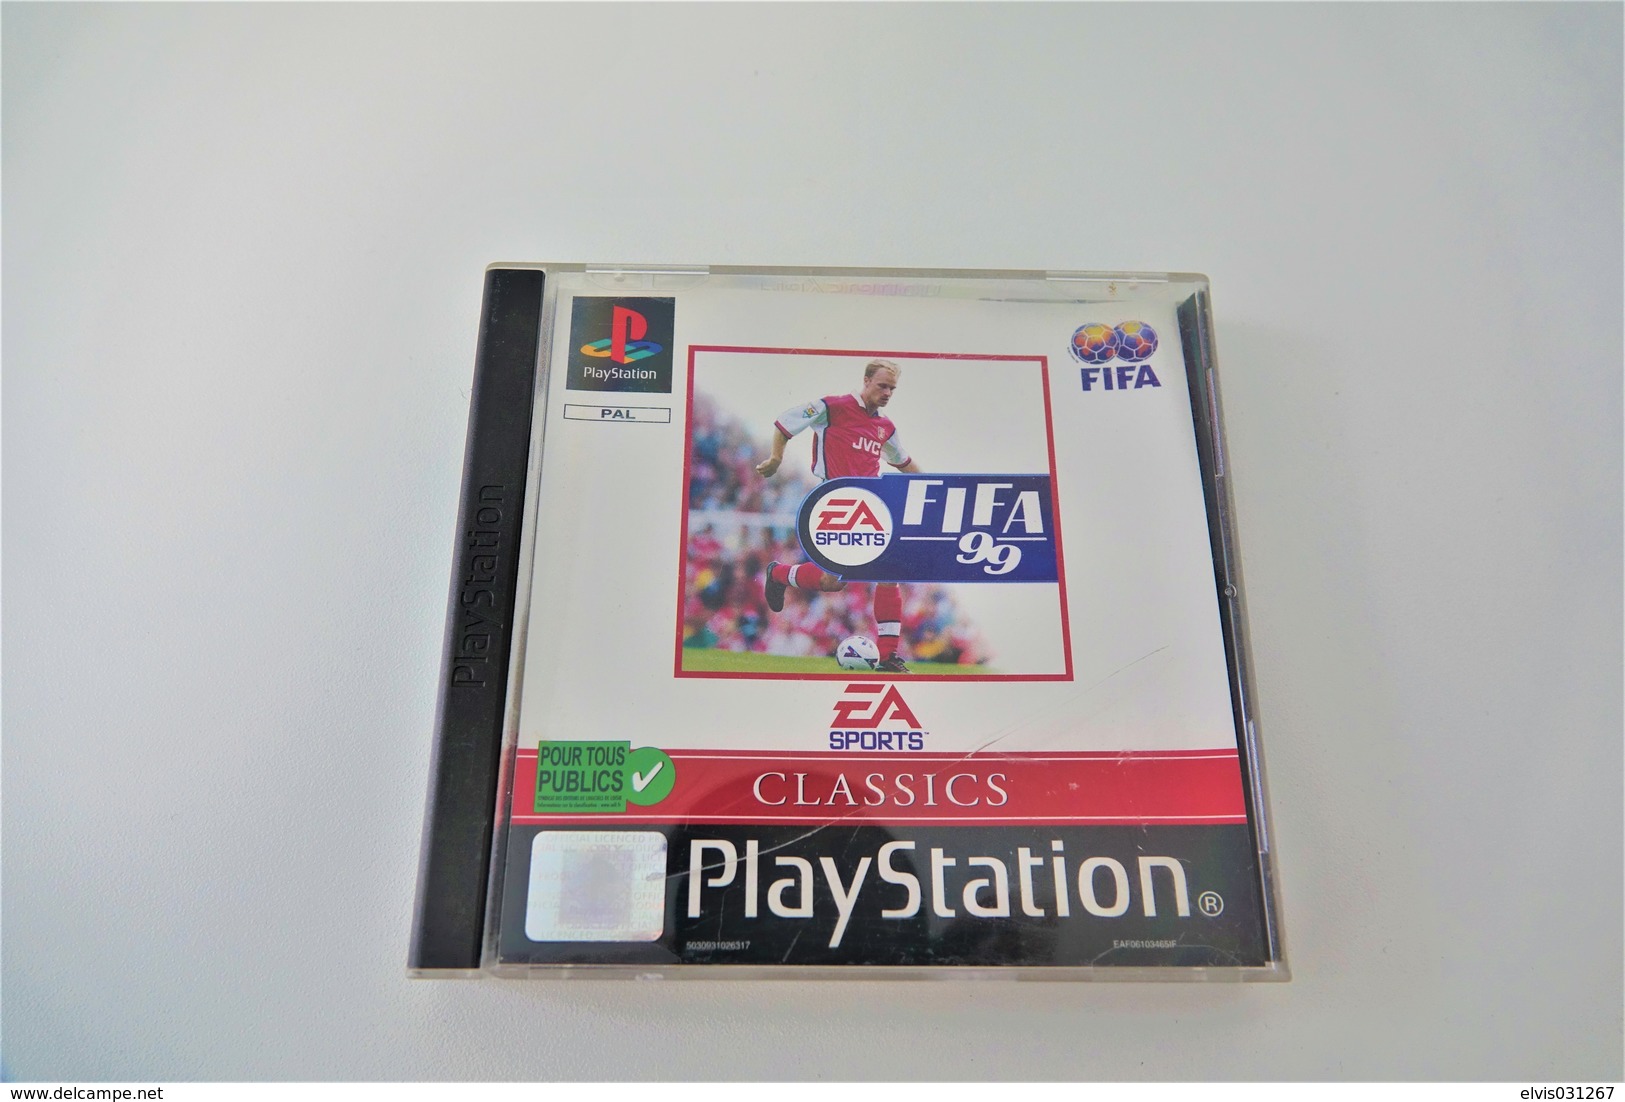 SONY PLAYSTATION ONE PS1 : EA CLASSICS FIFA 99 - Playstation